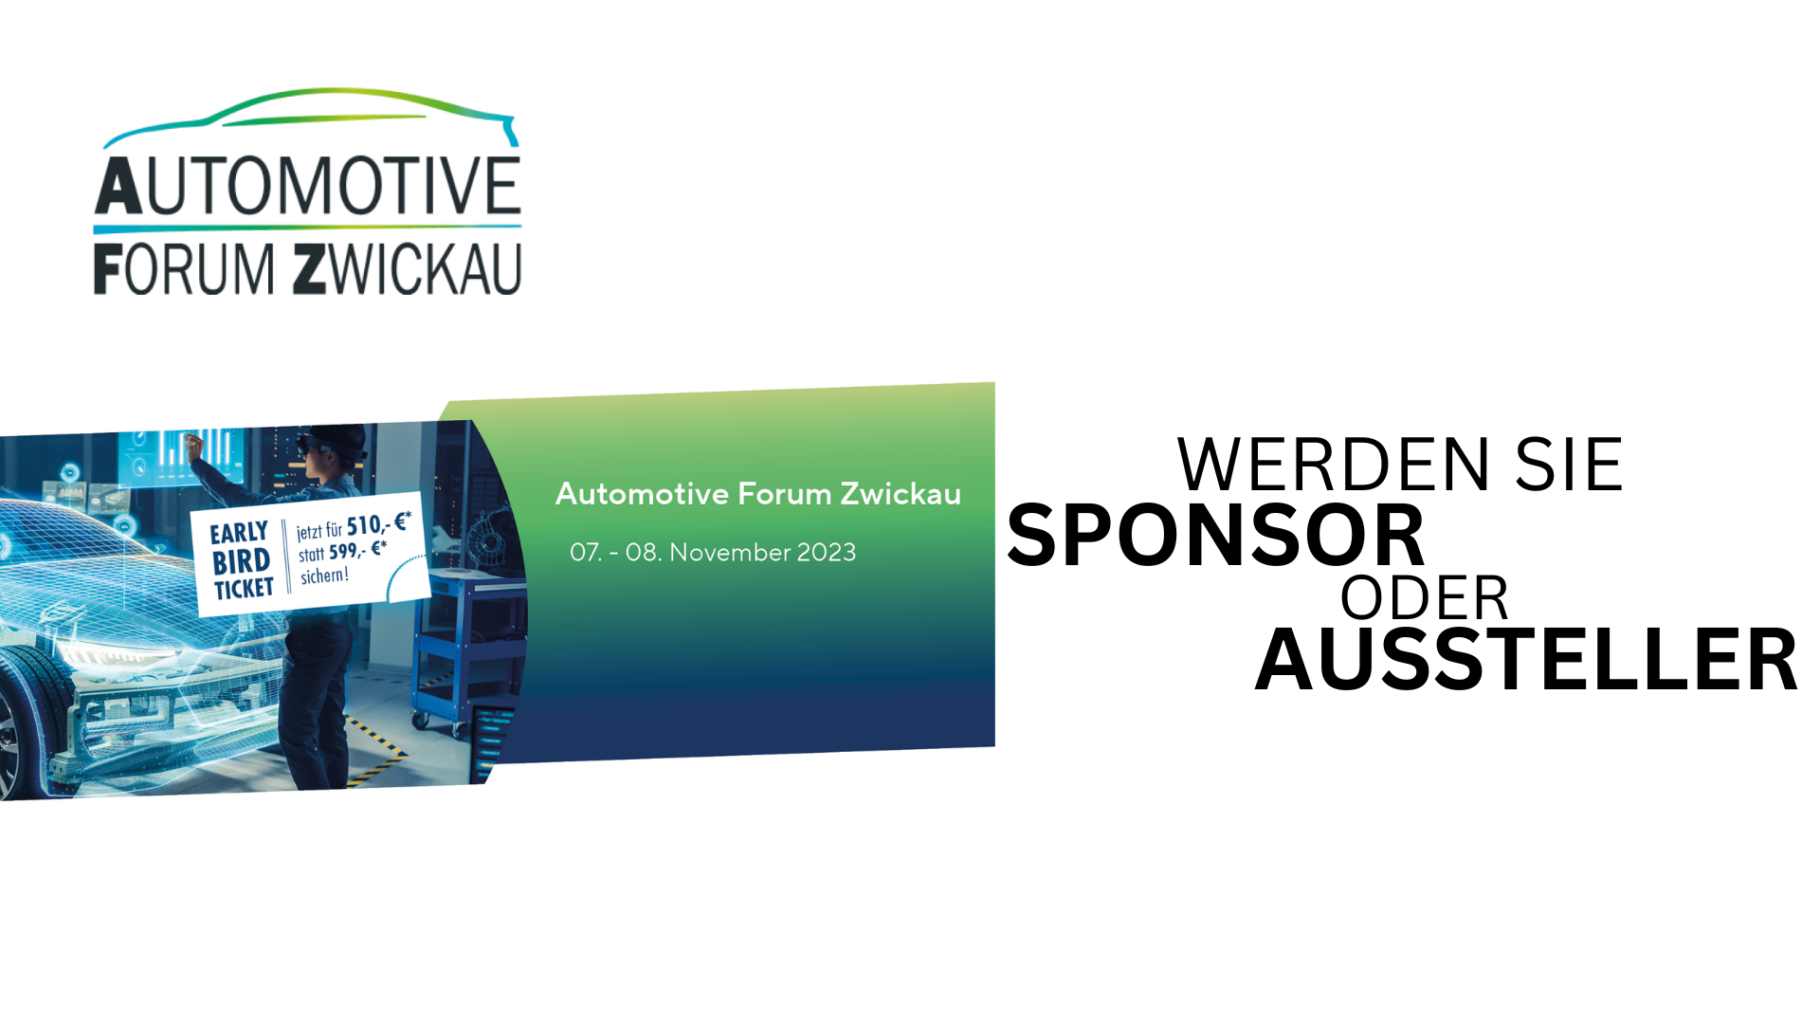 Automotive Forum Zwickau - Aussteller und Sponsor